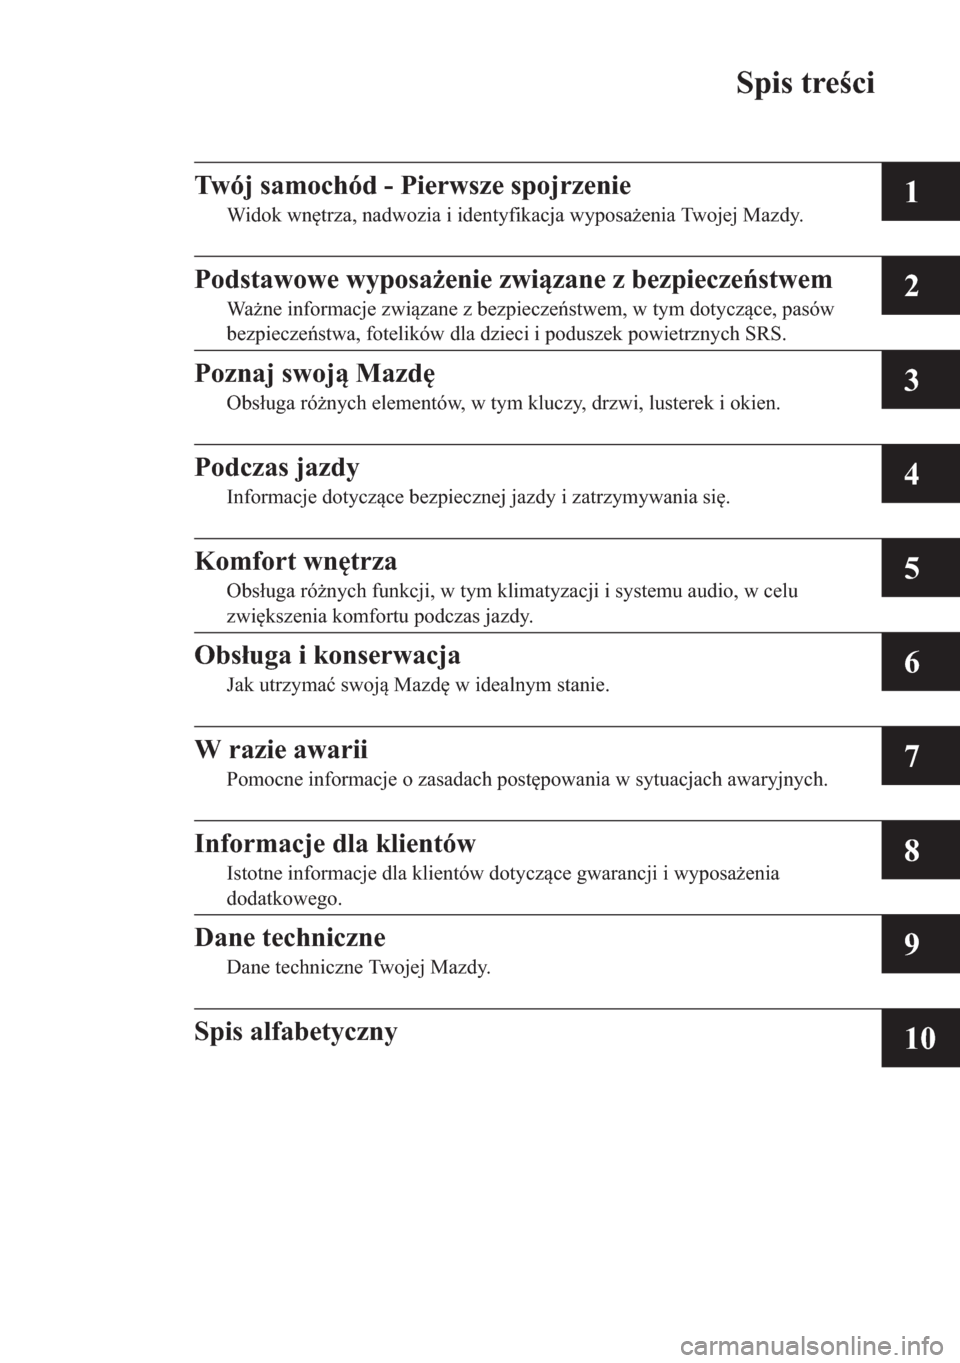 MAZDA MODEL CX-5 2013  Instrukcja Obsługi (in Polish) Spis treci
1
2
3
4
5
6
7
8
9
10
Twój samochód - Pierwsze spojrzenie
Widok wntrza, nadwozia i identyfikacja wyposaenia Twojej Mazdy.
Podstawowe wyposaenie zwizane z bezpiecze	stwem
Wane informa